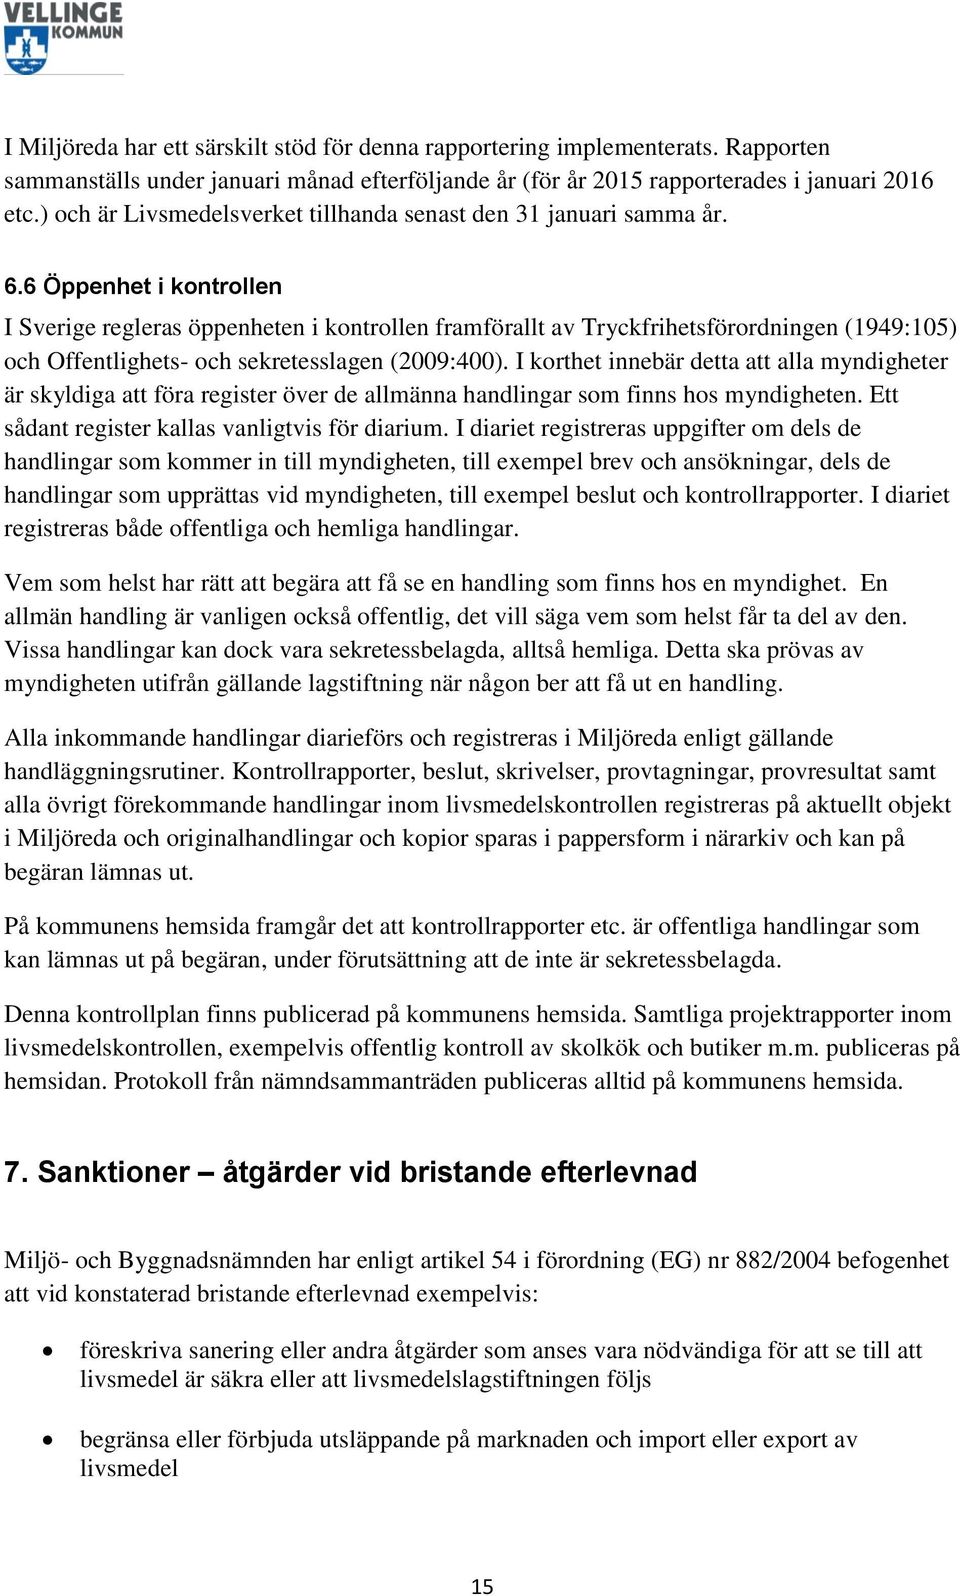 6 Öppenhet i kontrollen I Sverige regleras öppenheten i kontrollen framförallt av Tryckfrihetsförordningen (1949:105) och Offentlighets- och sekretesslagen (2009:400).